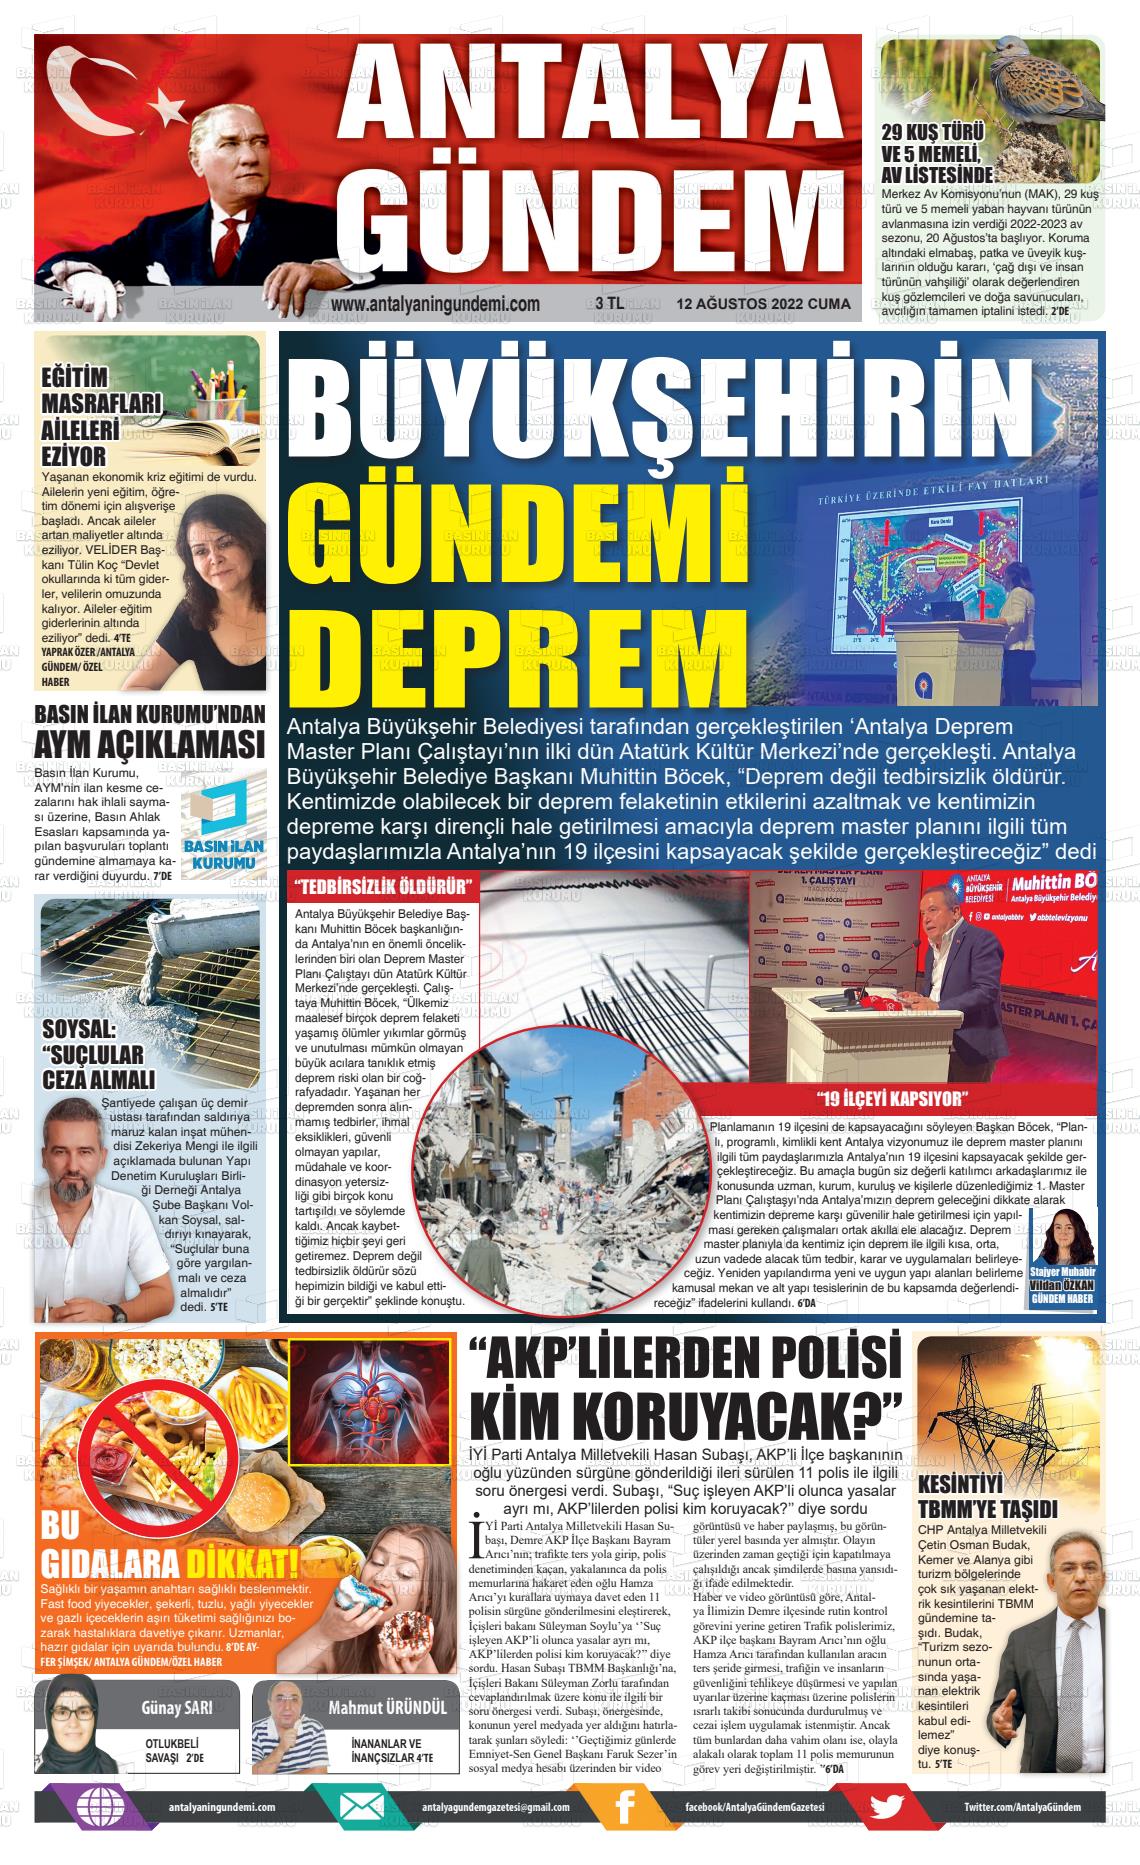 12 Ağustos 2022 Antalya'nın Gündemi Gazete Manşeti